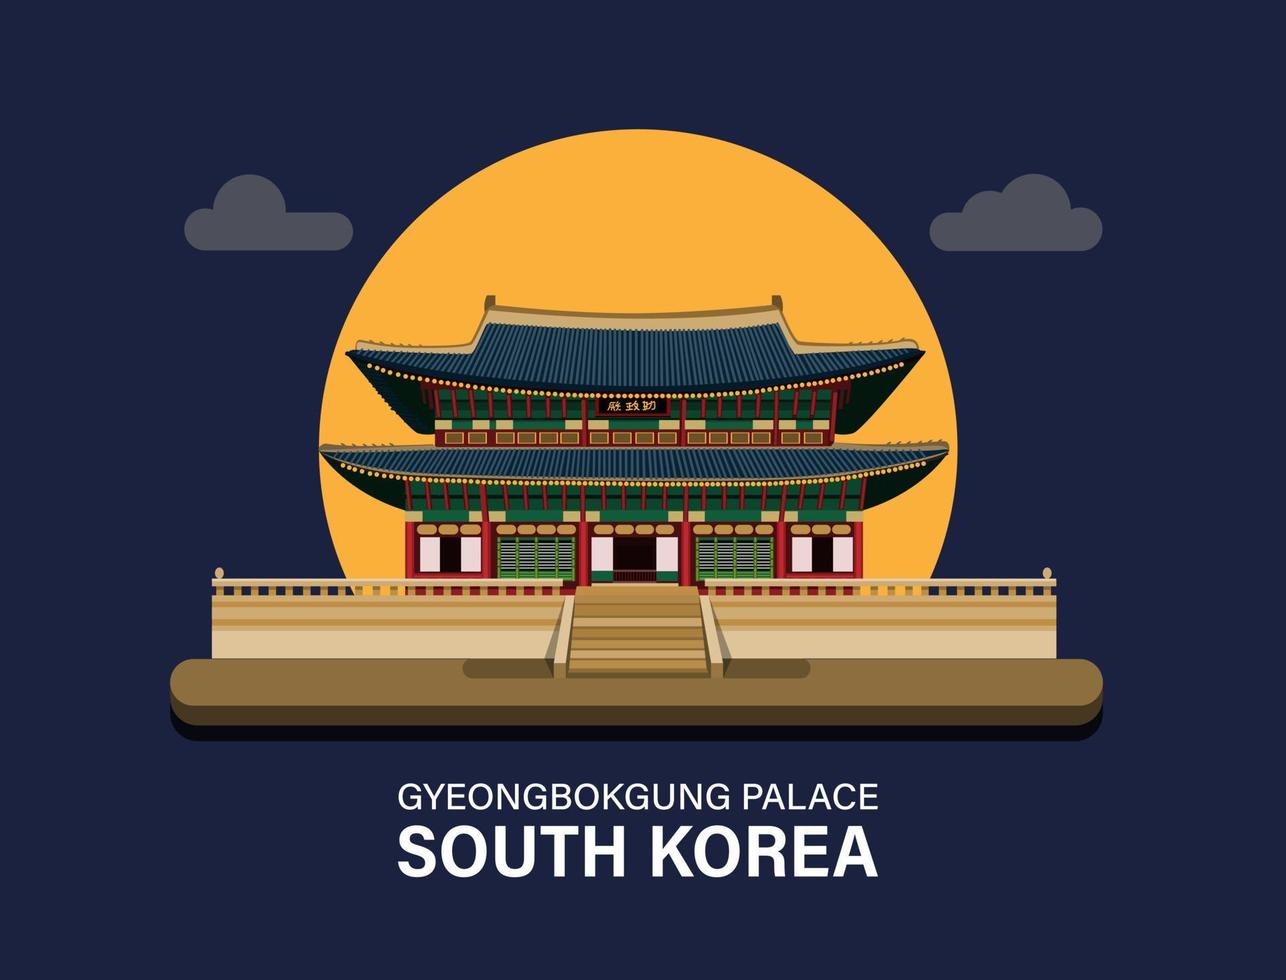 gyeongbokgung palace, sydkorea byggnad landmärke symbol för resor eller turism destination illustration vektor